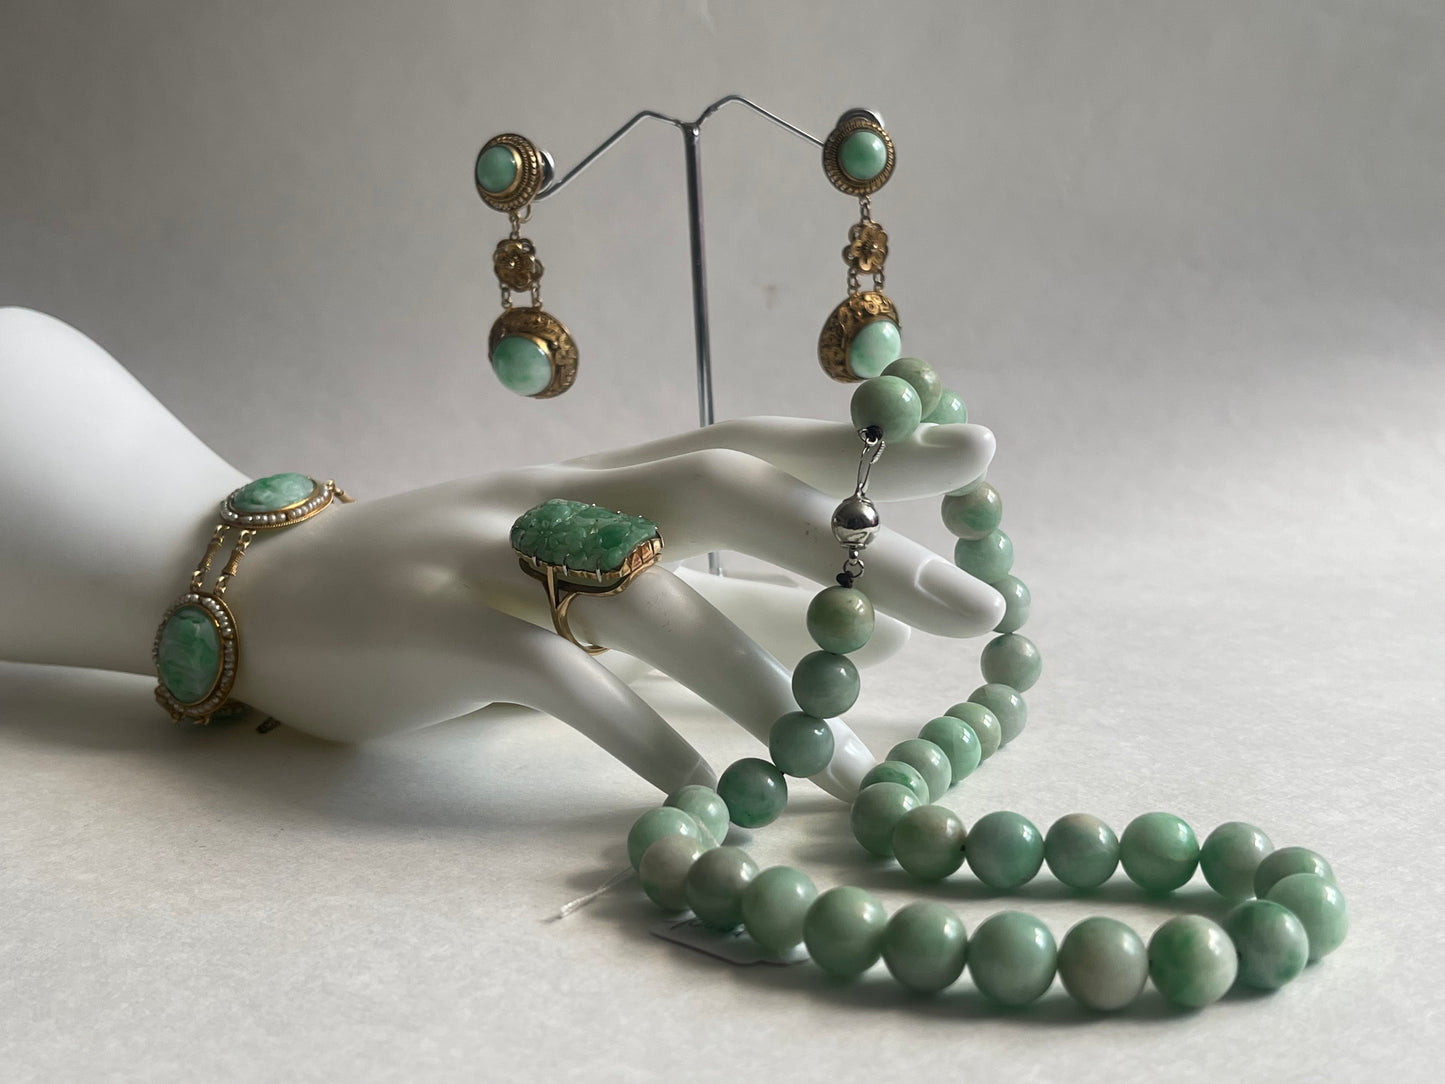 A pair of antique jade earrings